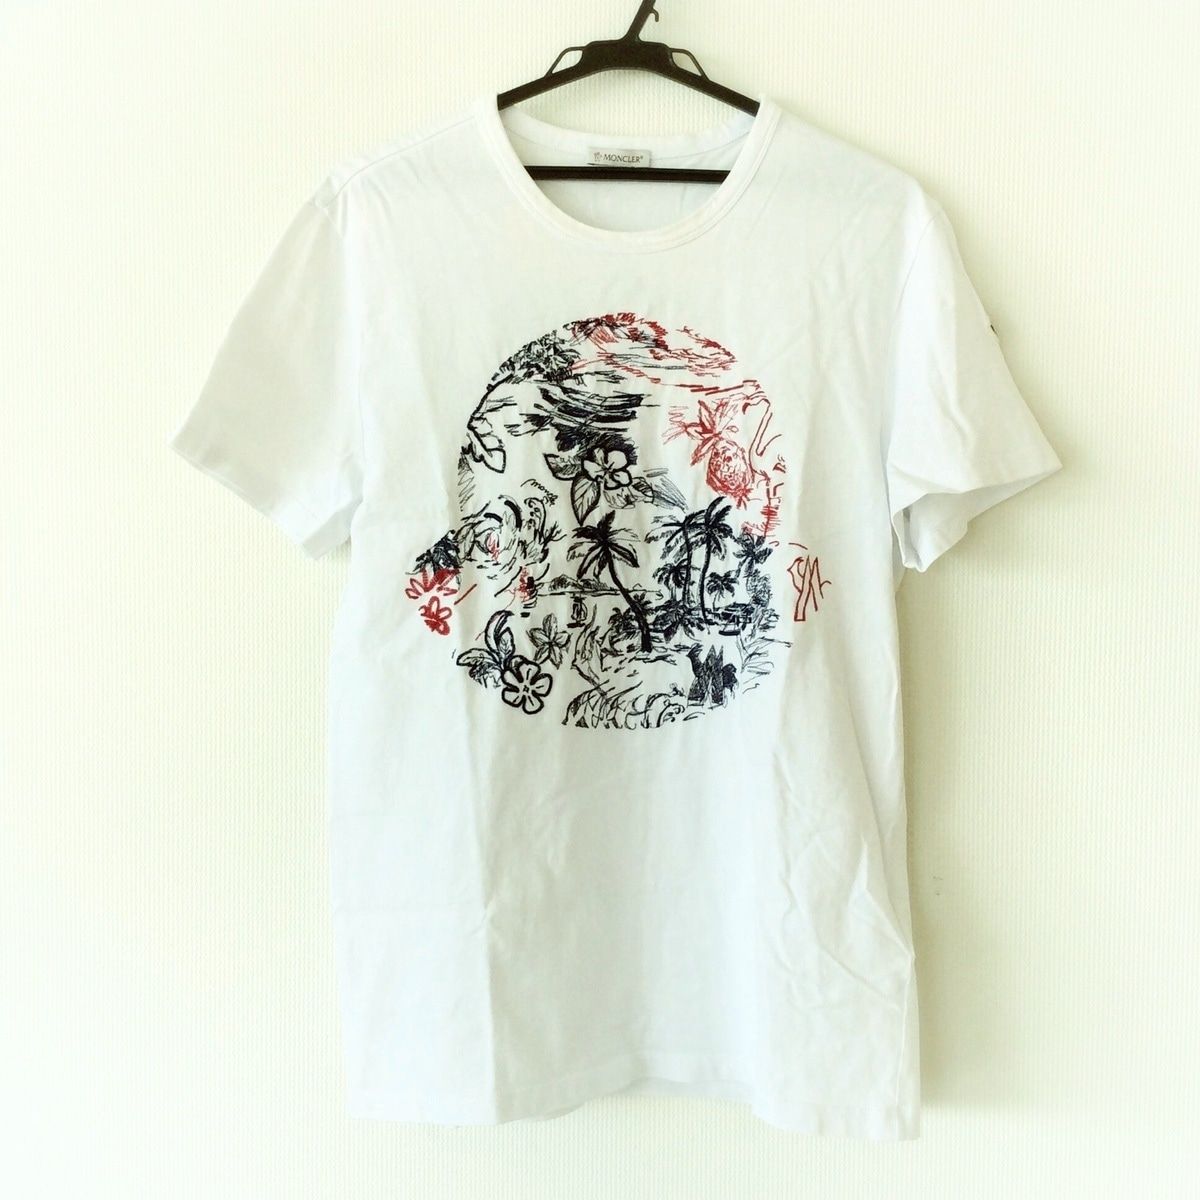 MONCLER(モンクレール) 半袖Tシャツ サイズ メンズ MAGLIA 白×ネイビー